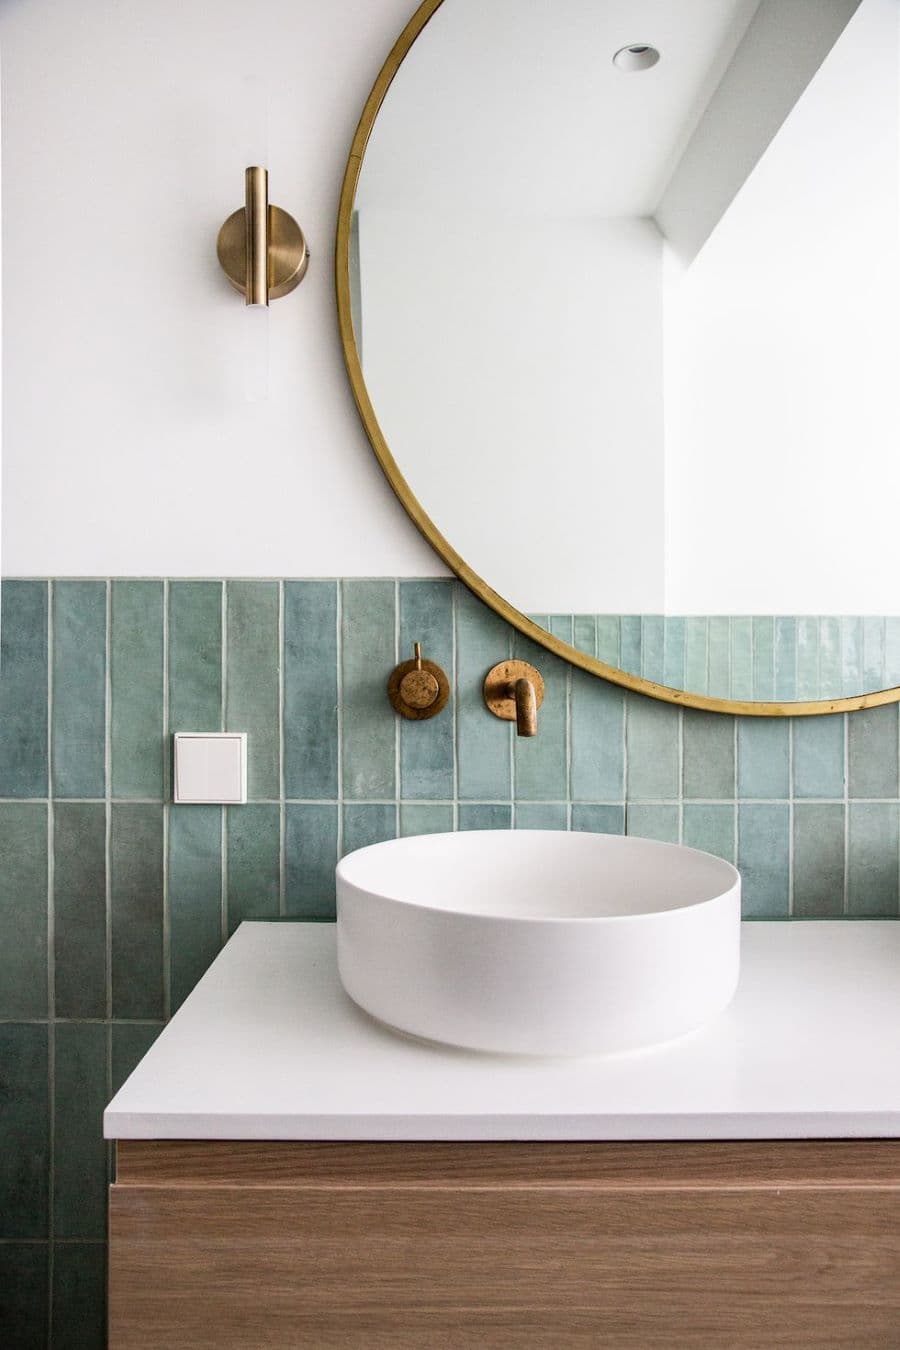 Baño con lavamanos redondo, sobrepuesto sobre un vanitorio de madera. Grifería empotrada en el muro. Azulejos azul verdoso, rectangulares. Gran espejo redondo con marco dorado.